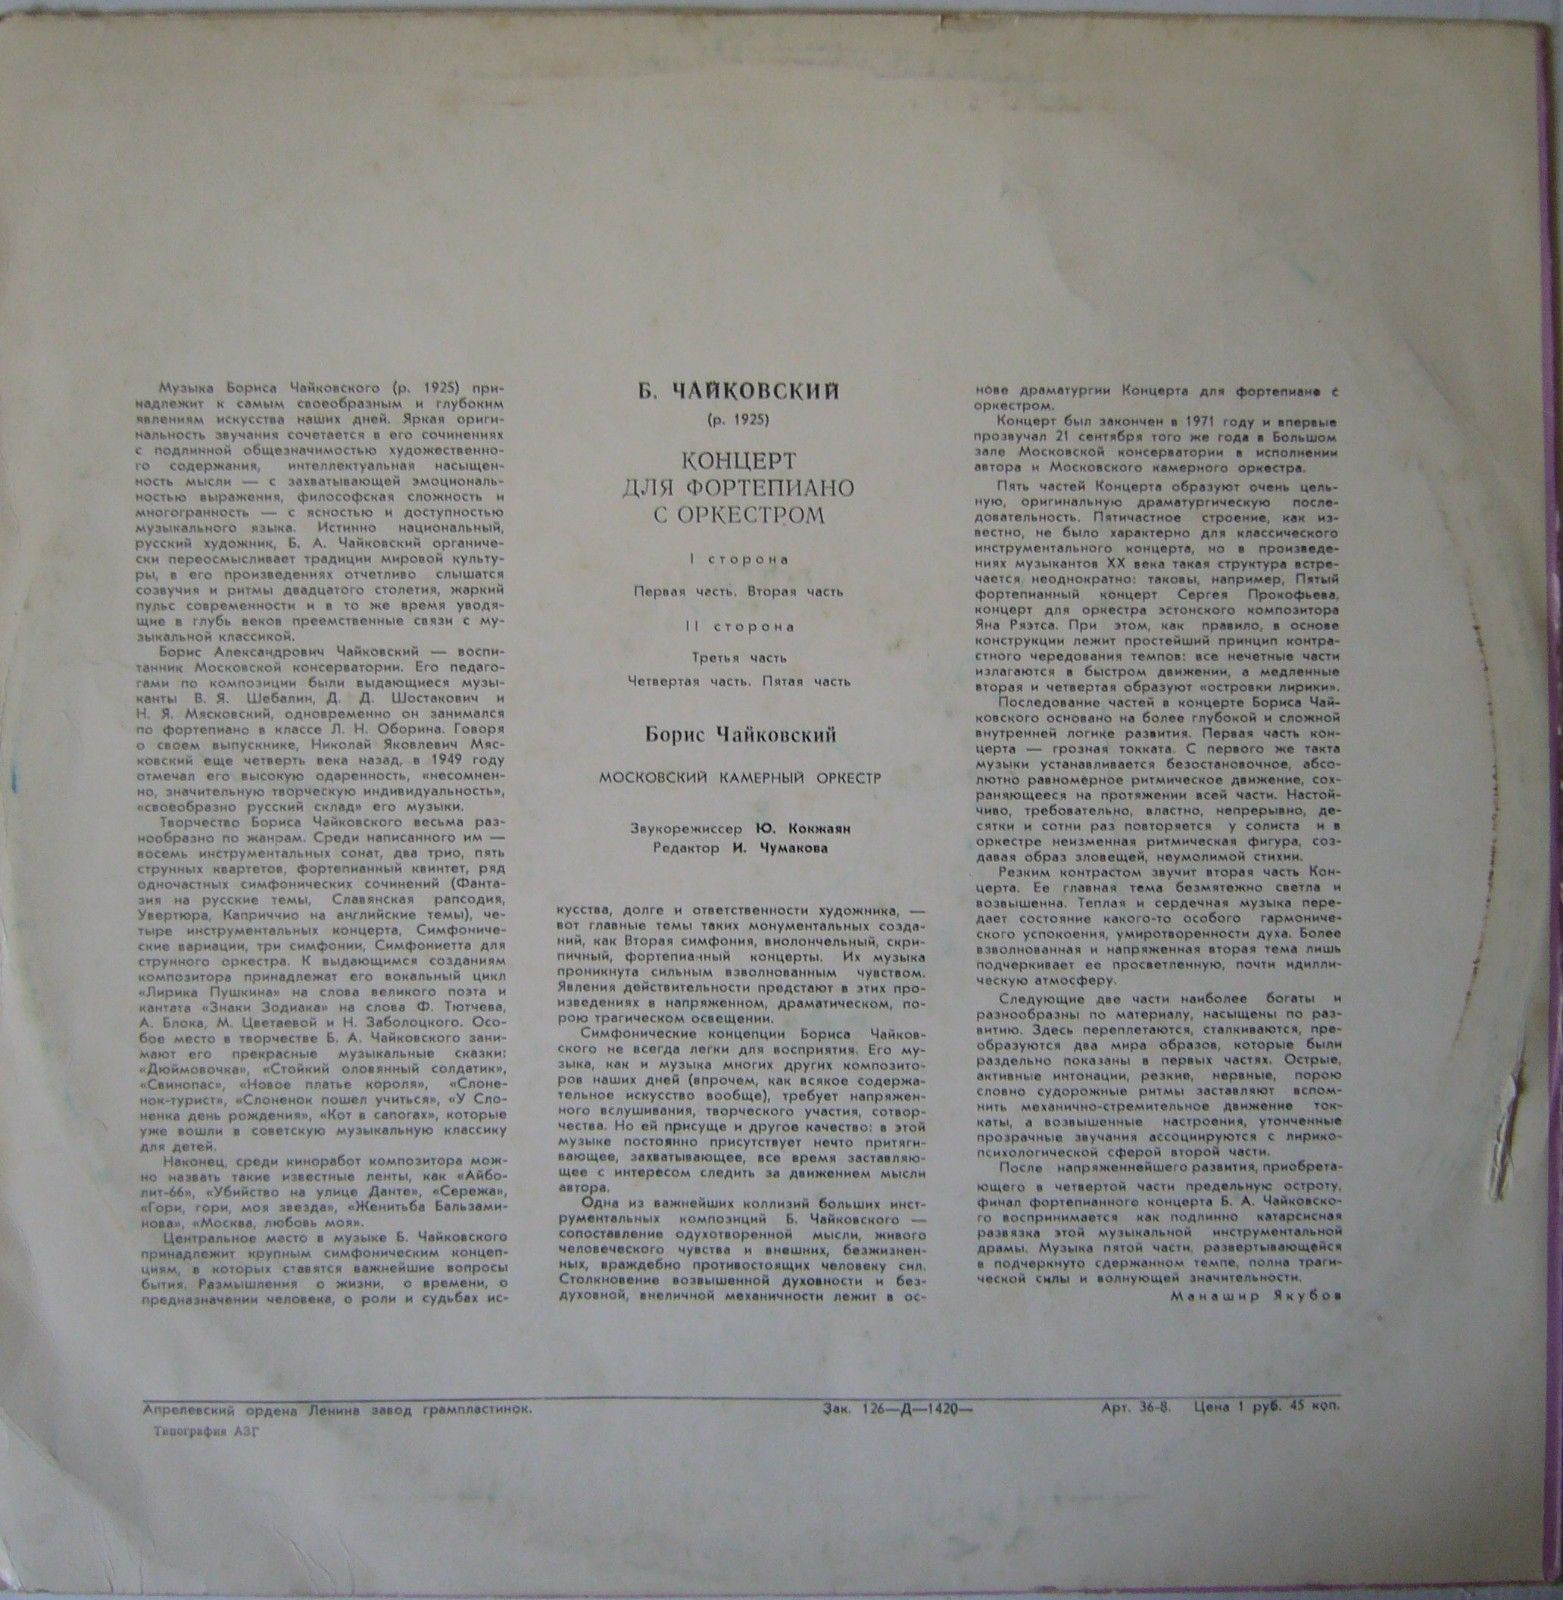 Б. ЧАЙКОВСКИЙ (1925): Концерт для ф-но с оркестром (Б. Чайковский, МКО, Р. Баршай)